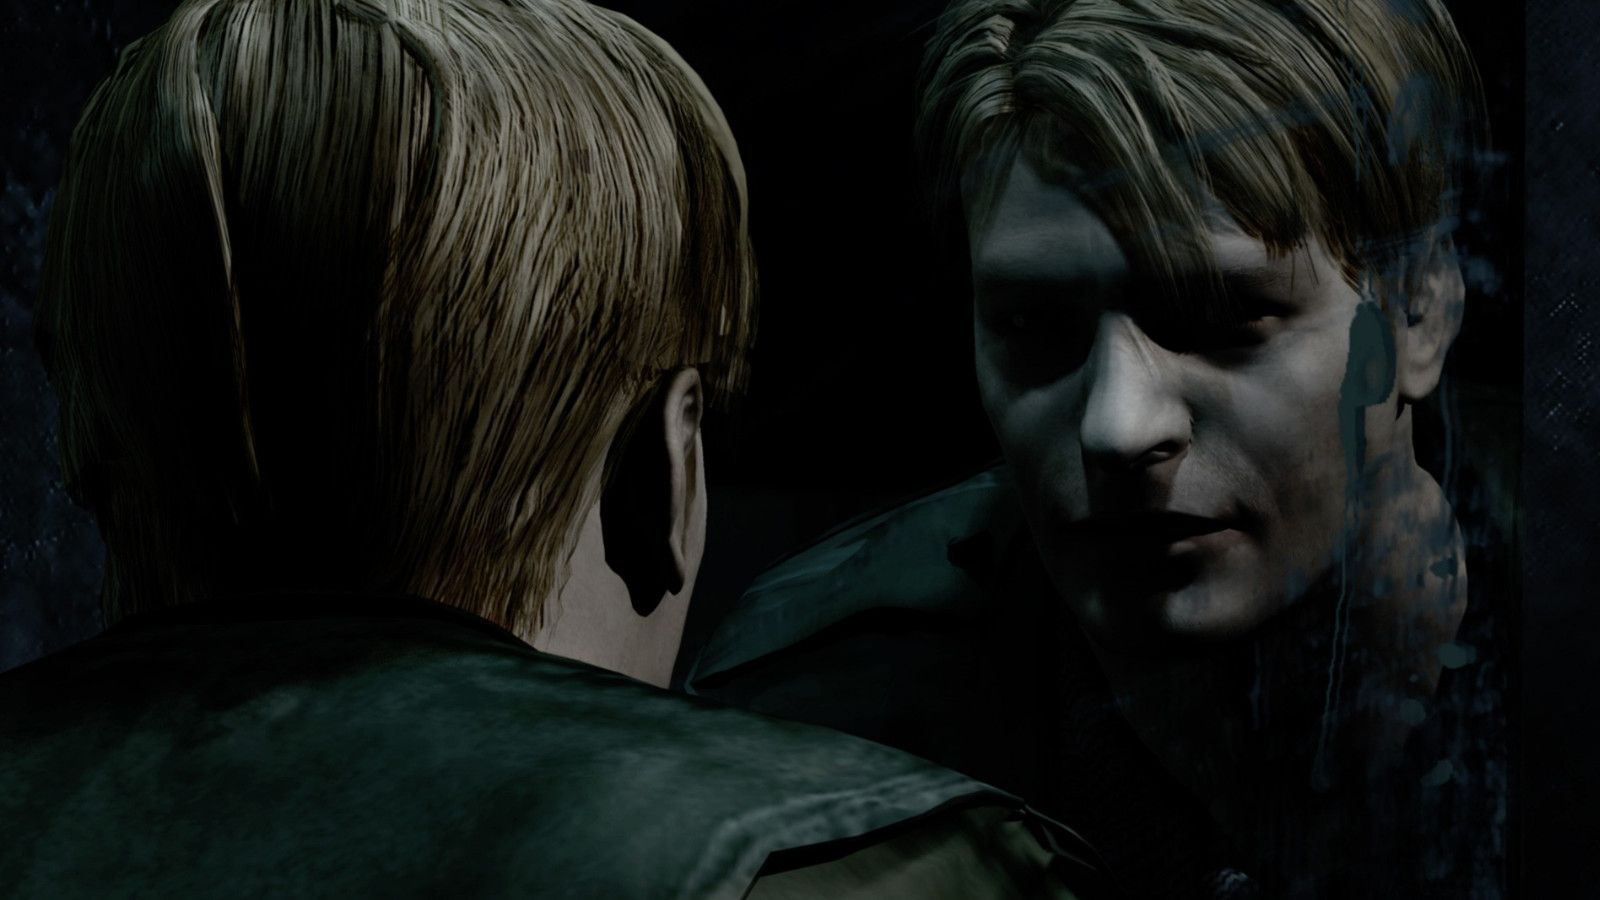 20 anos de Silent Hill 2: o impacto do game 2 décadas depois